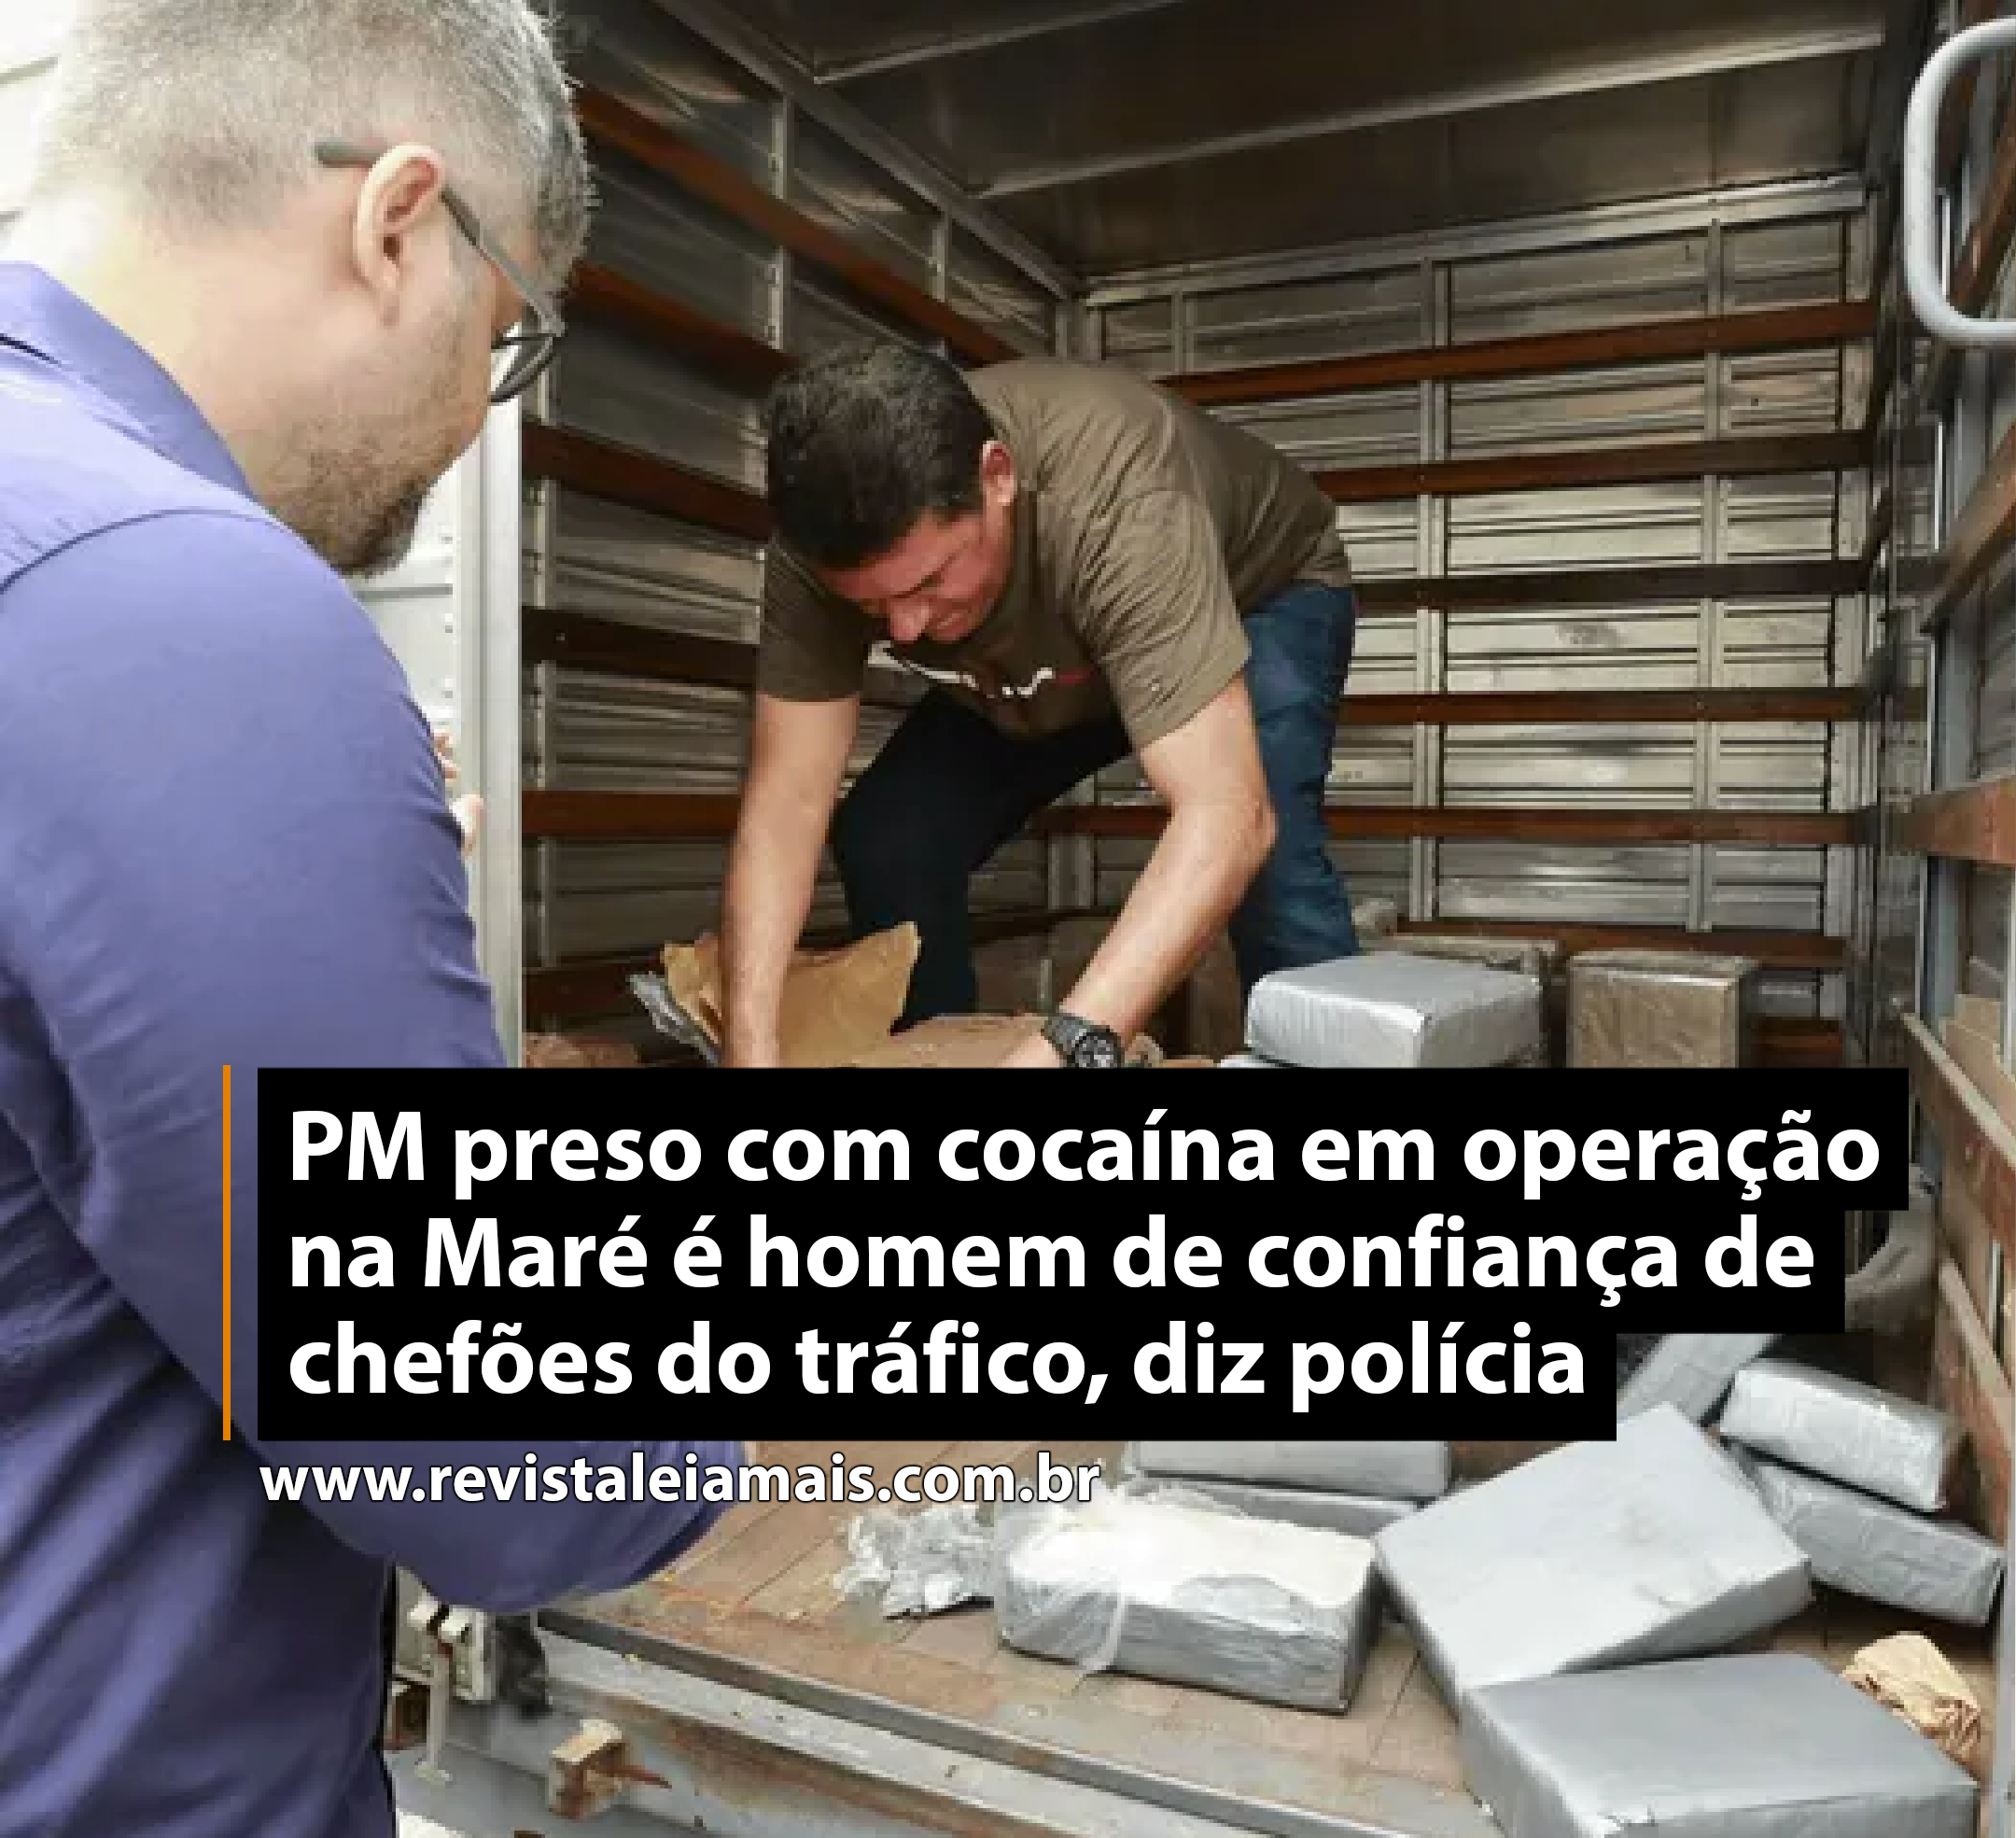 PM preso com cocaína em operação na Maré é homem de confiança de chefões do tráfico, diz polícia